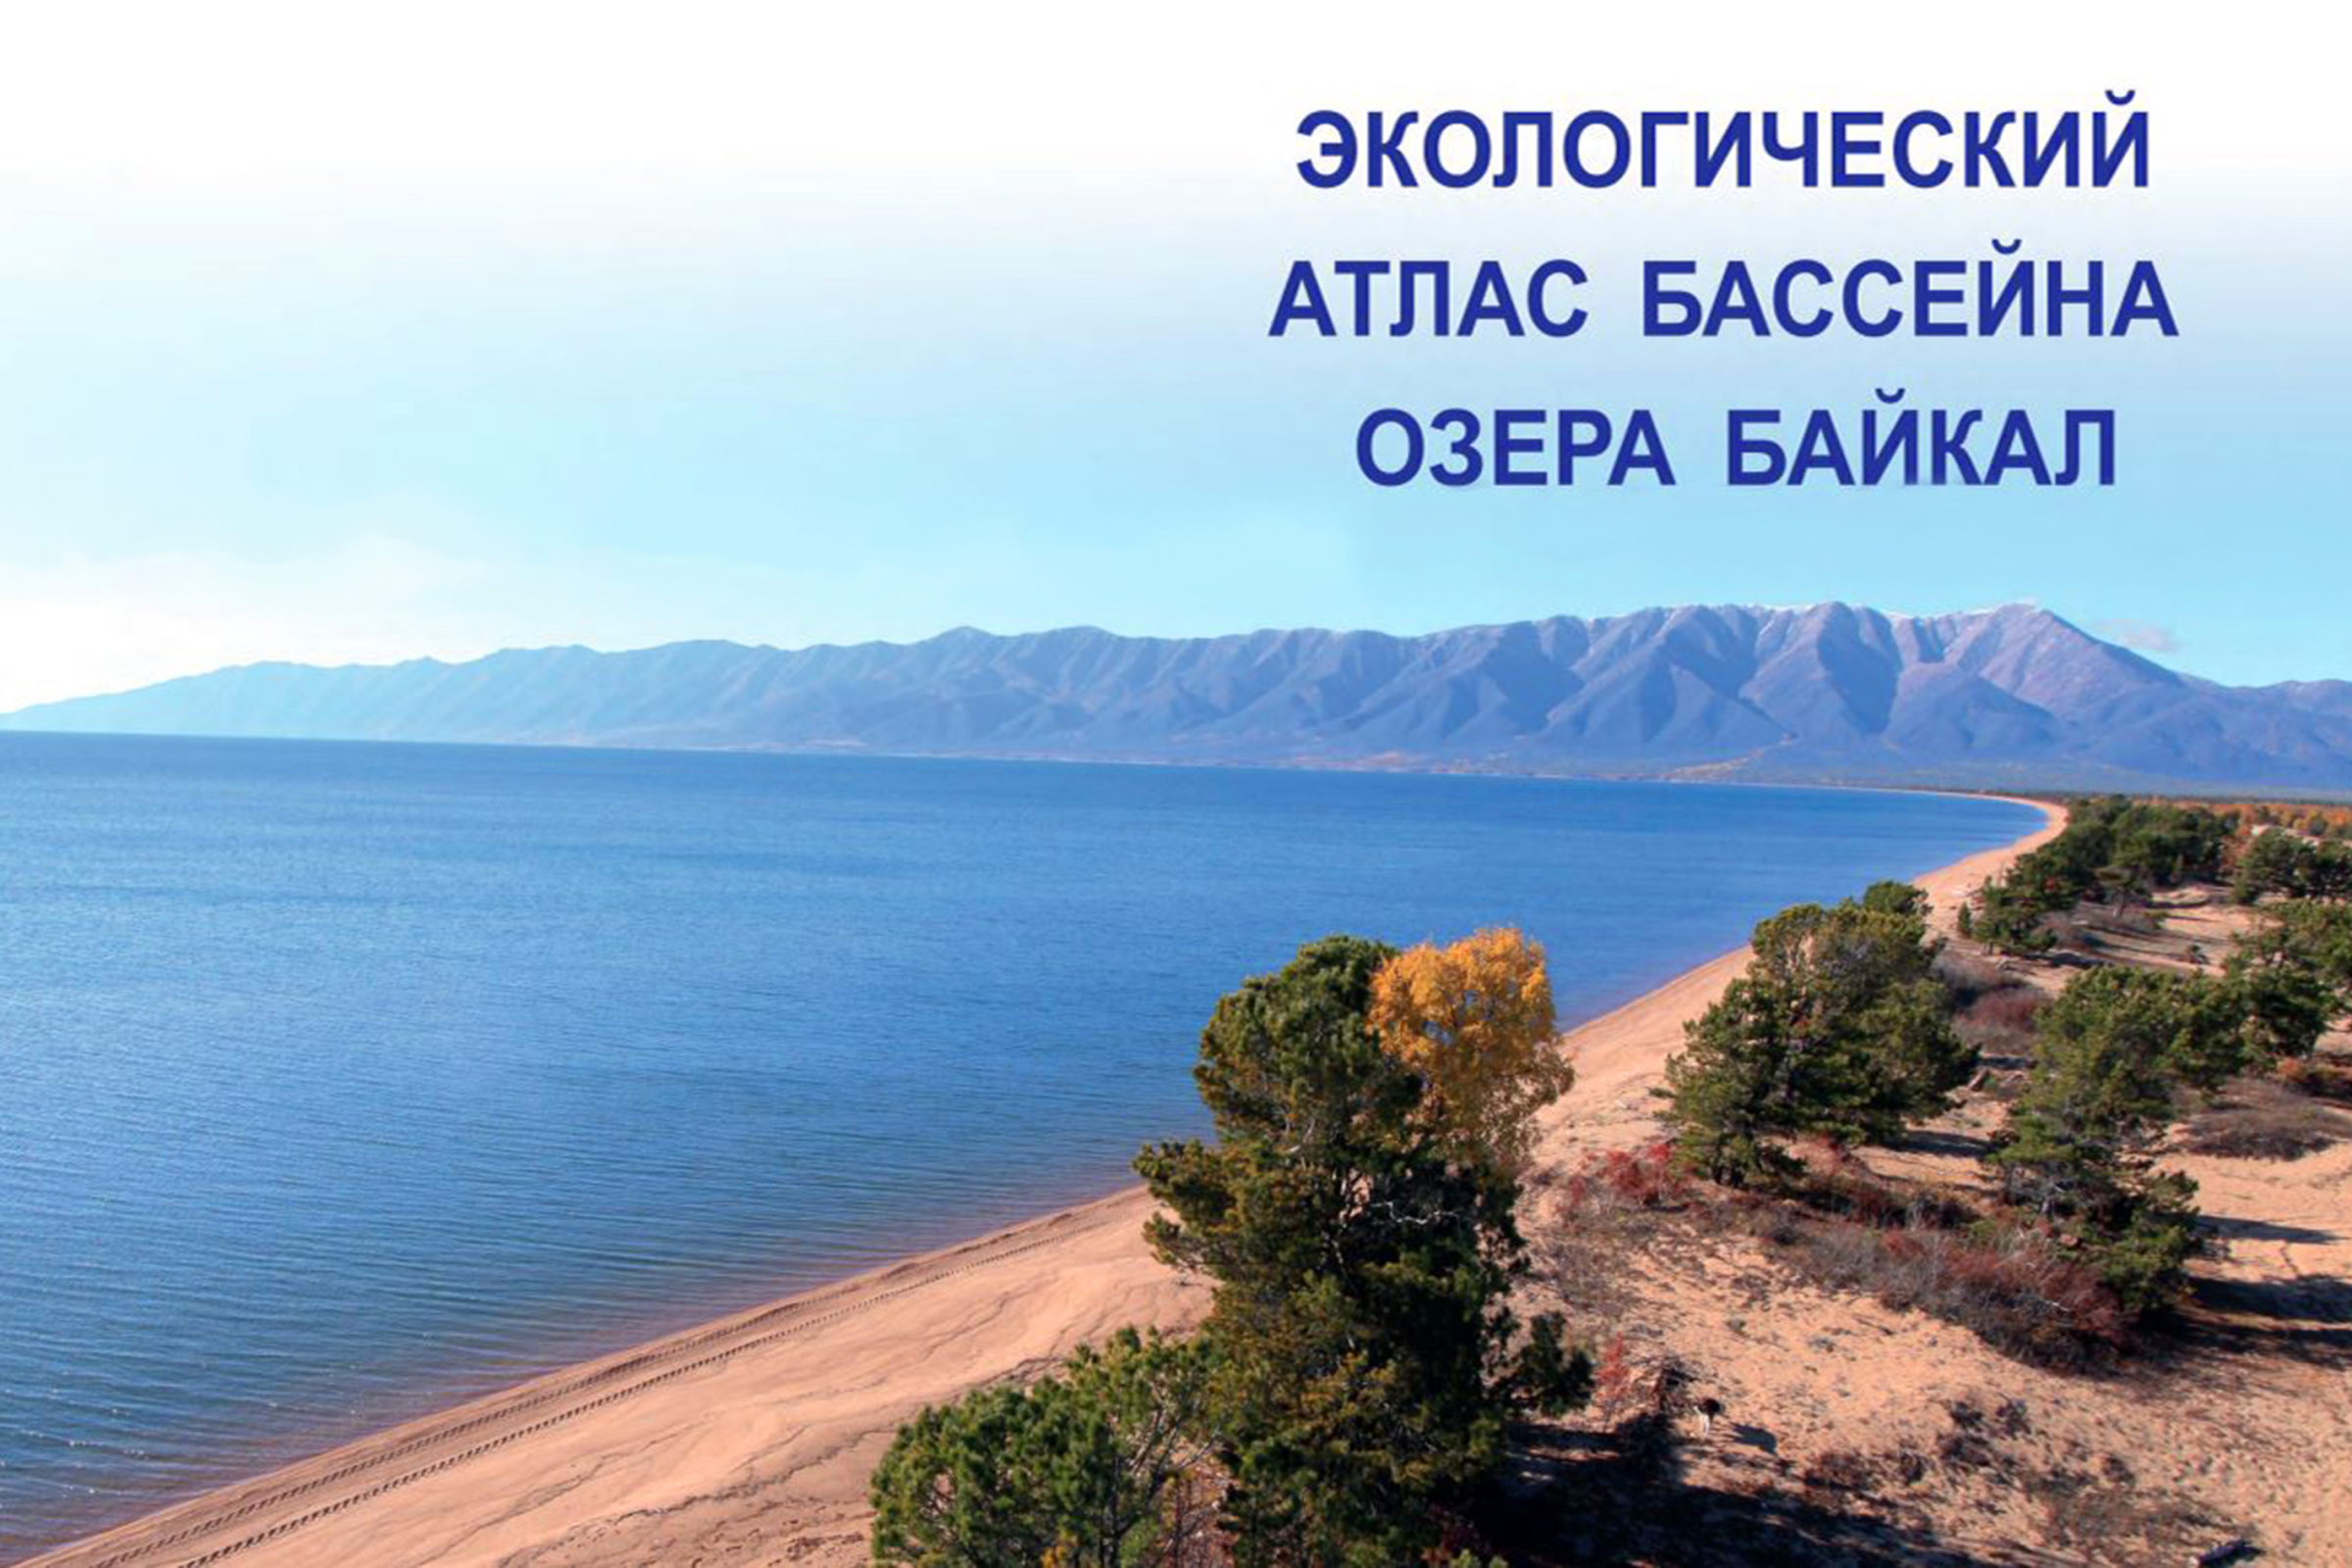 Обложка атласа с картами и текстами о бассейне Байкала. Фото: Обложка издания 